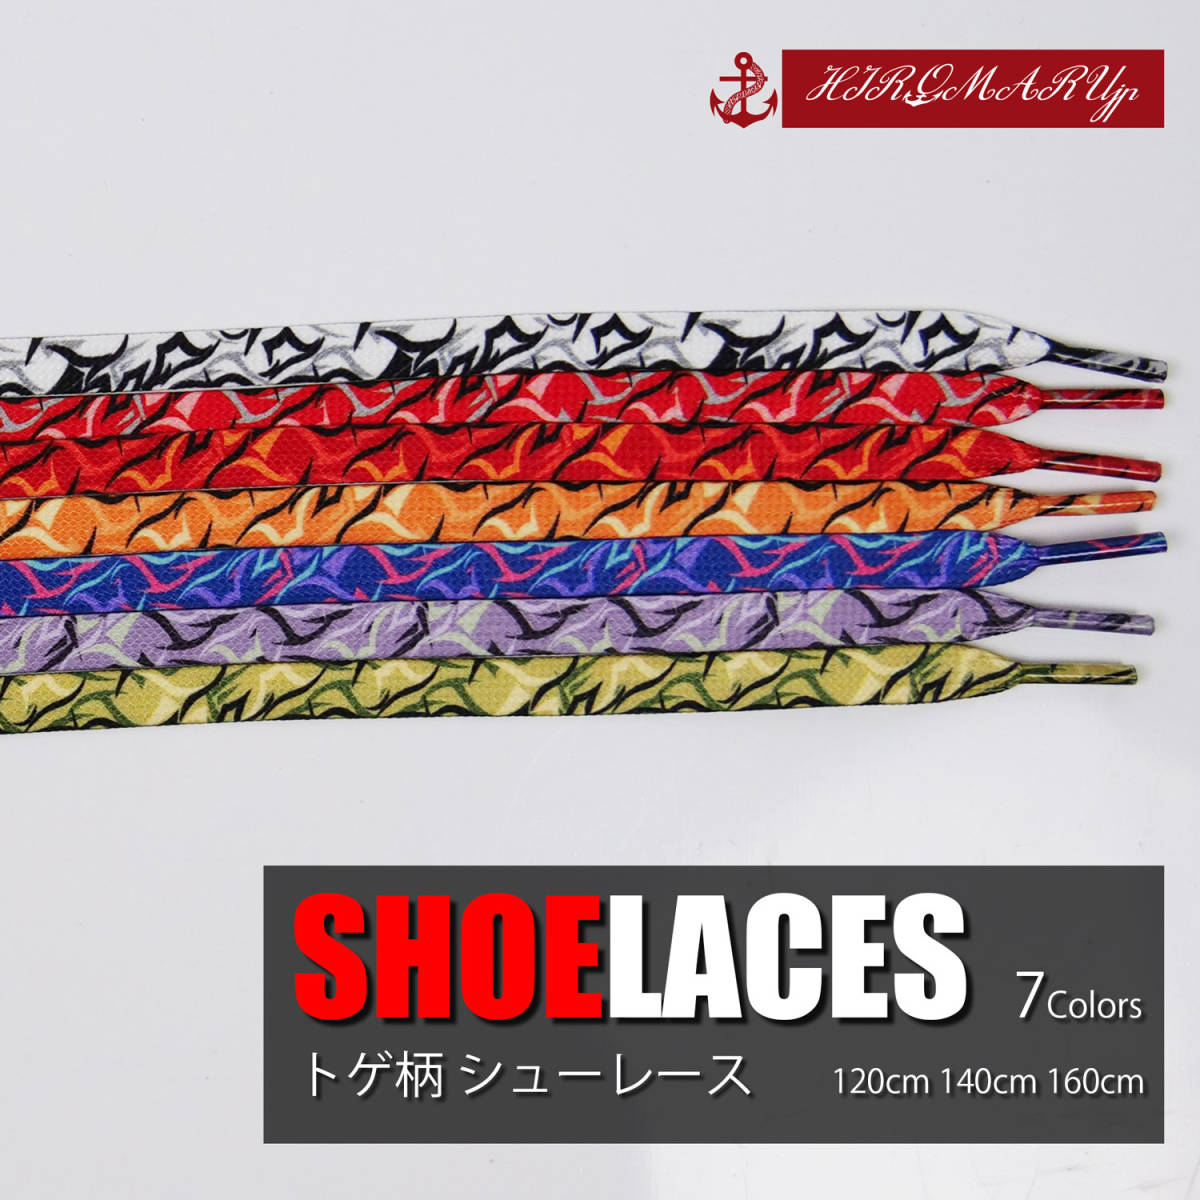  shoe race toge pattern SHOELACE shoe lace shoes string flat cord shoes cord sneakers shoes 120cm 140cm 160cm low cut is ikatto shoes 